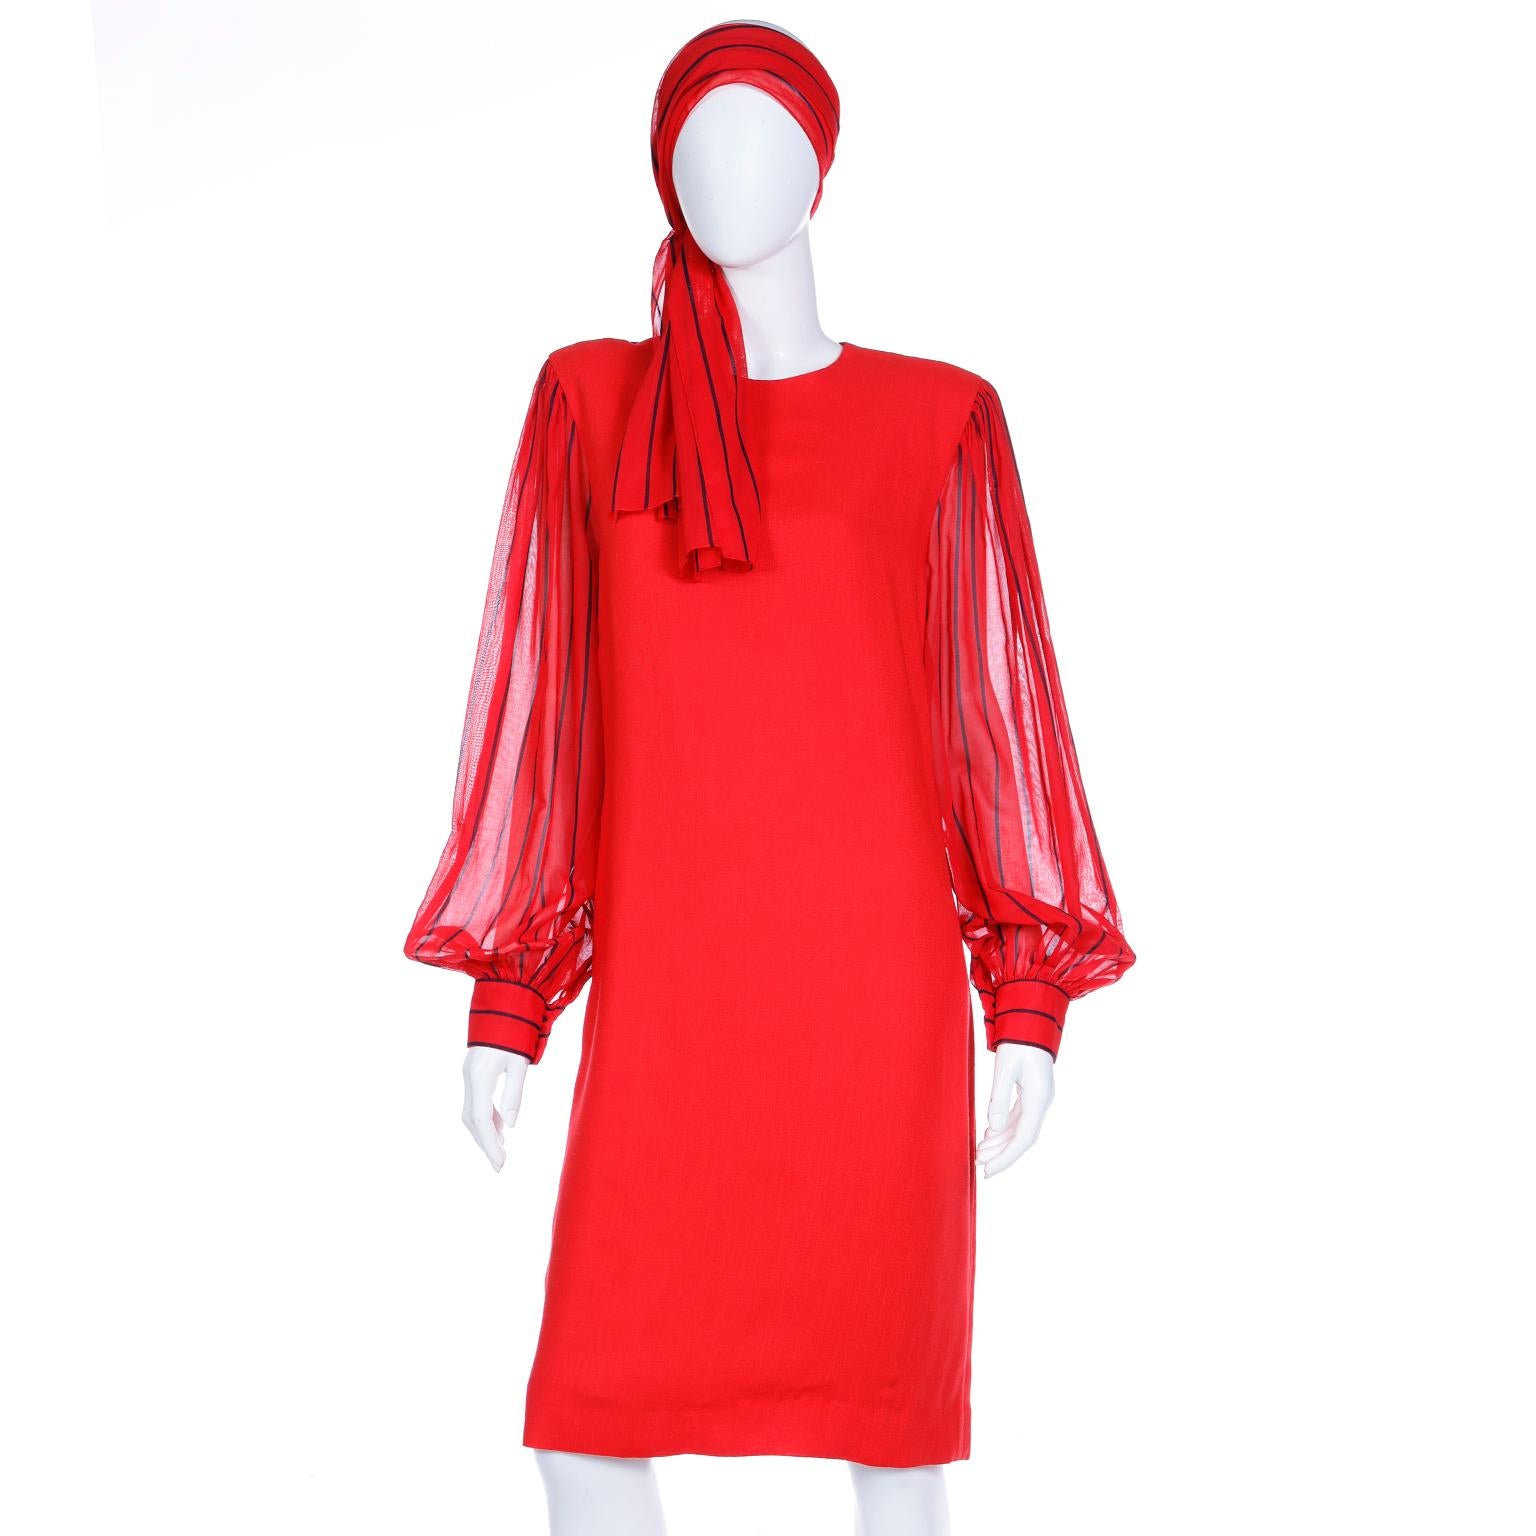 Voici une magnifique robe rouge vintage de Pauline Trigere avec des manches transparentes à rayures. Pauline Trigere a coupé et drapé le tissu qu'elle utilisait directement sur de vraies femmes au lieu d'esquisser ses dessins. Non seulement elle